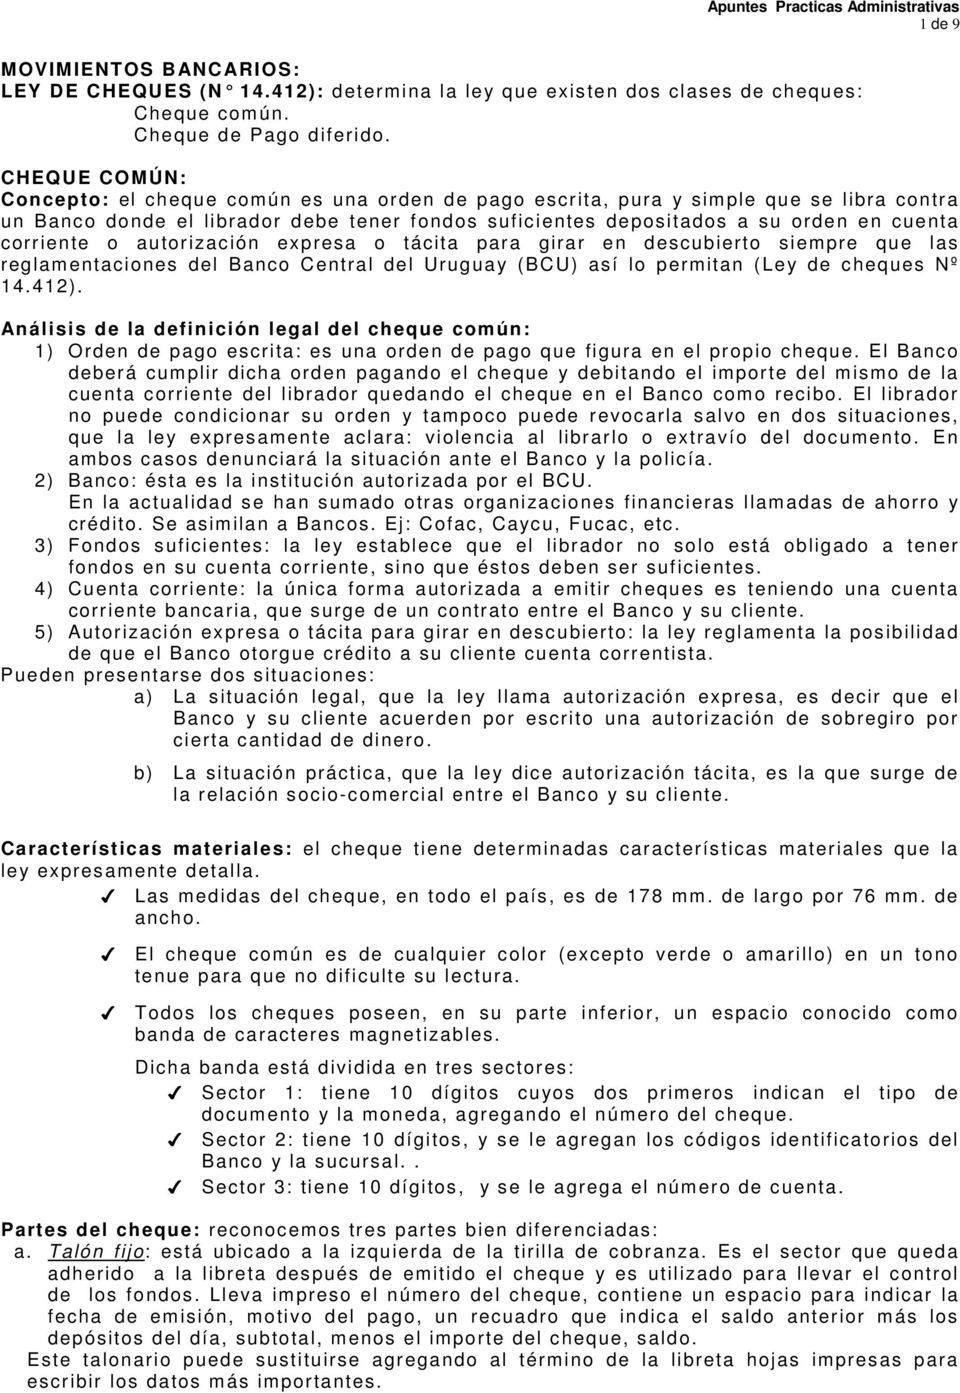 corriente o autorización expresa o tácita para girar en descubierto siempre que las reglamentaciones del Banco Central del Uruguay (BCU) así lo permitan (Ley de cheques Nº 14.412).